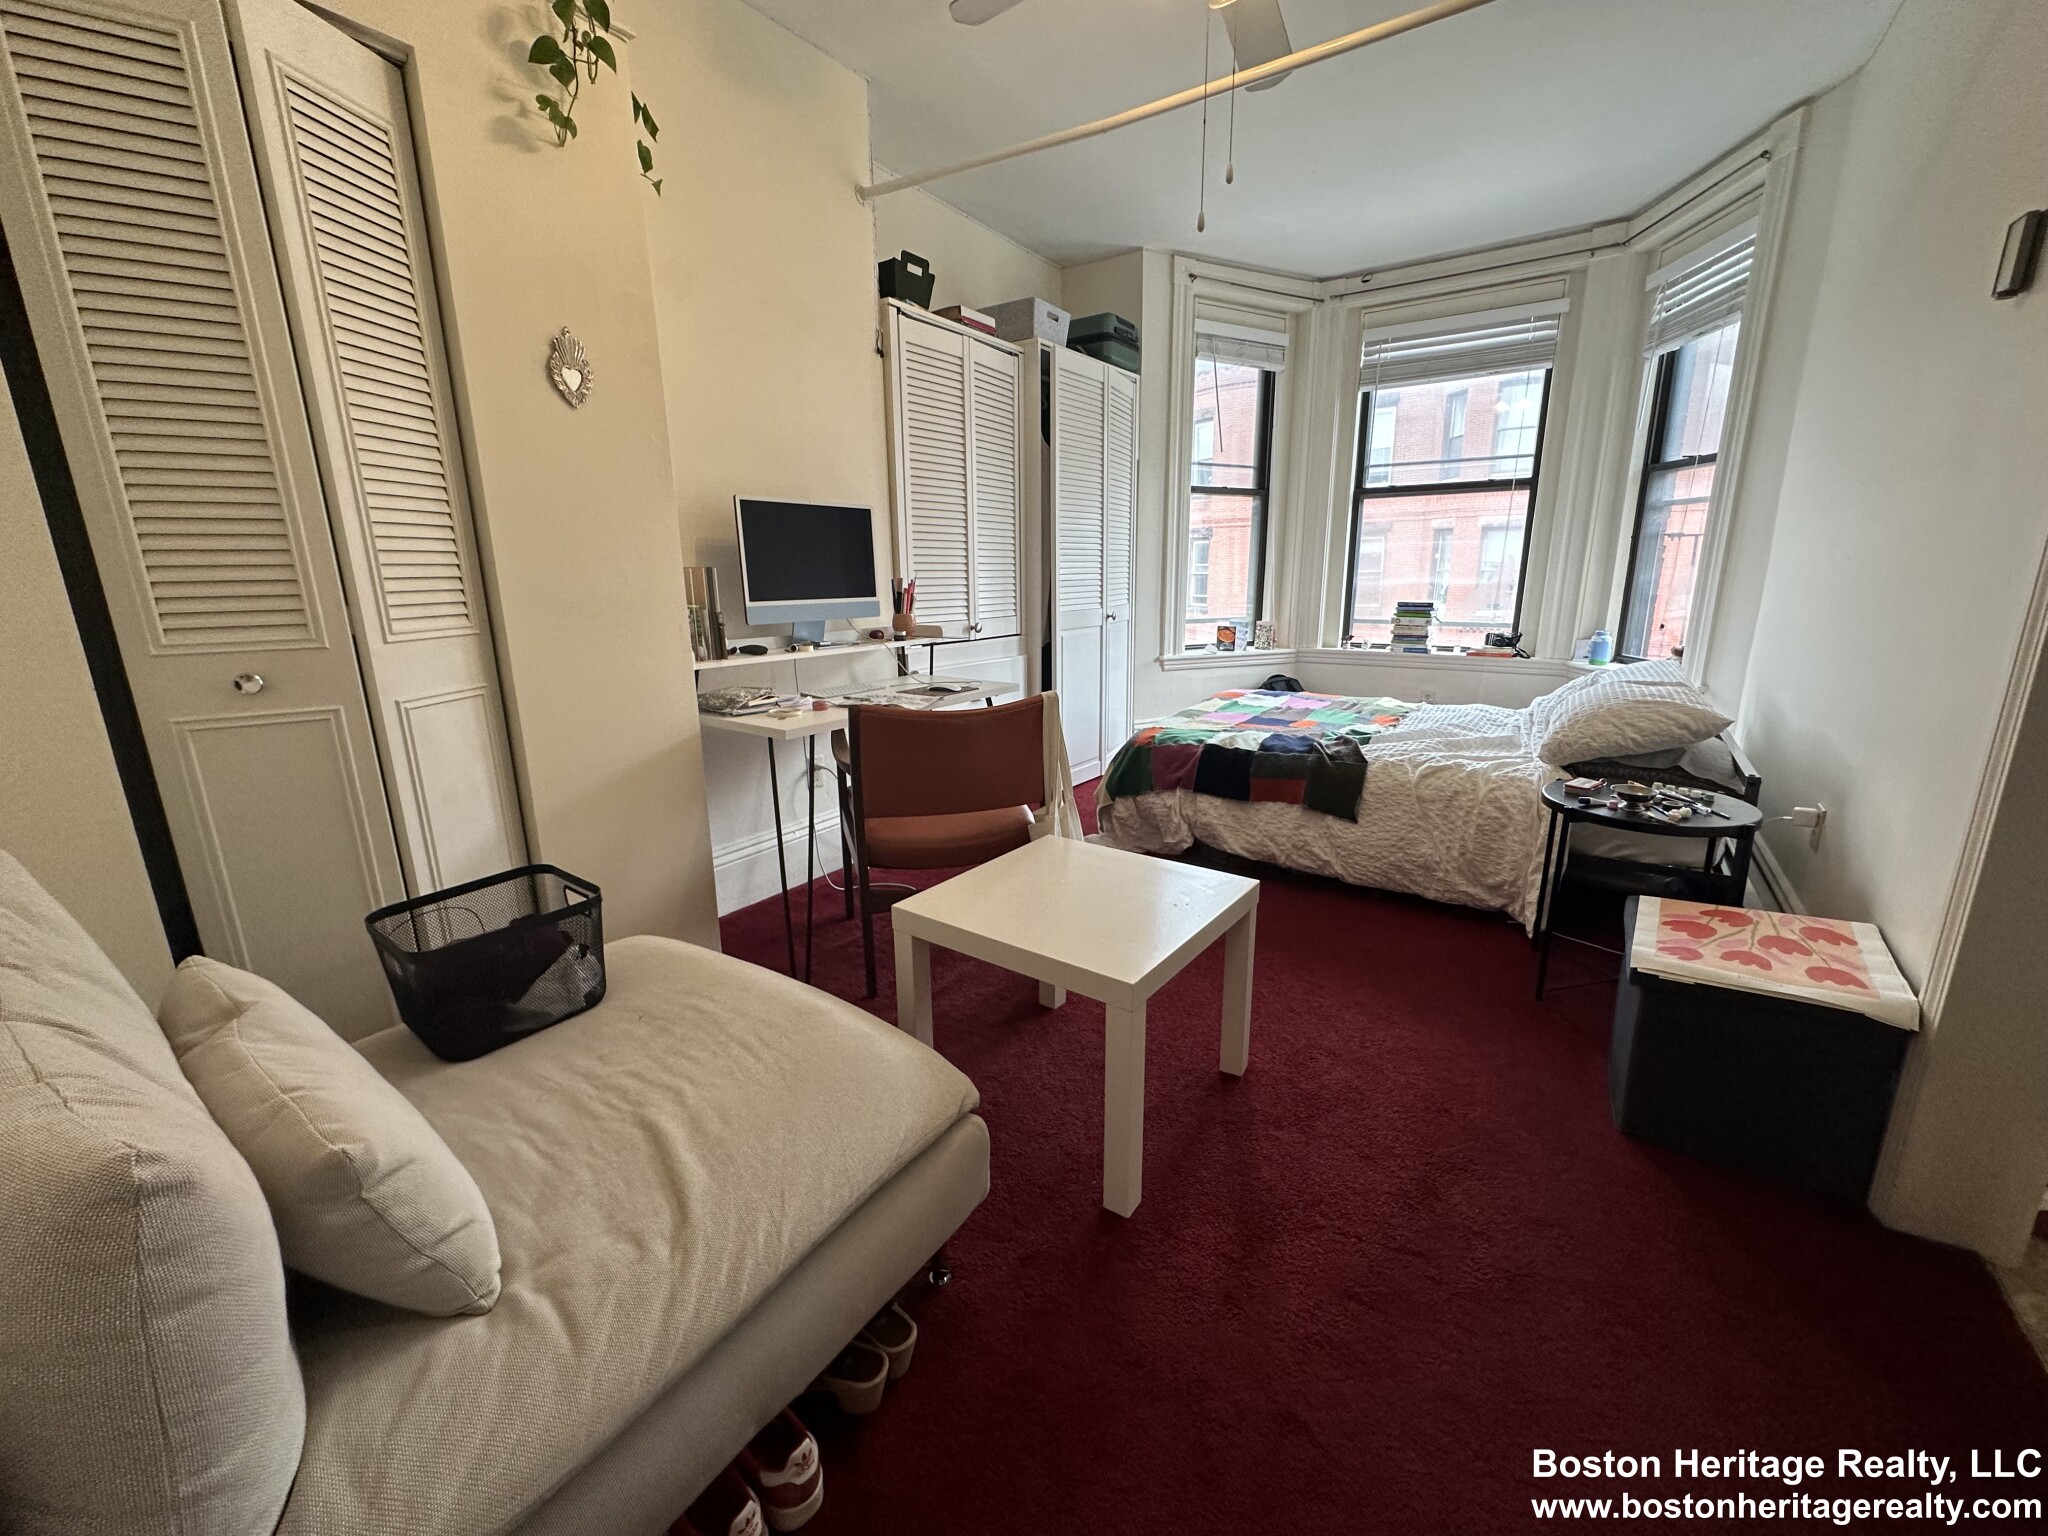 Studio, 1 Bath apartment in Boston, Fenway for $1,800